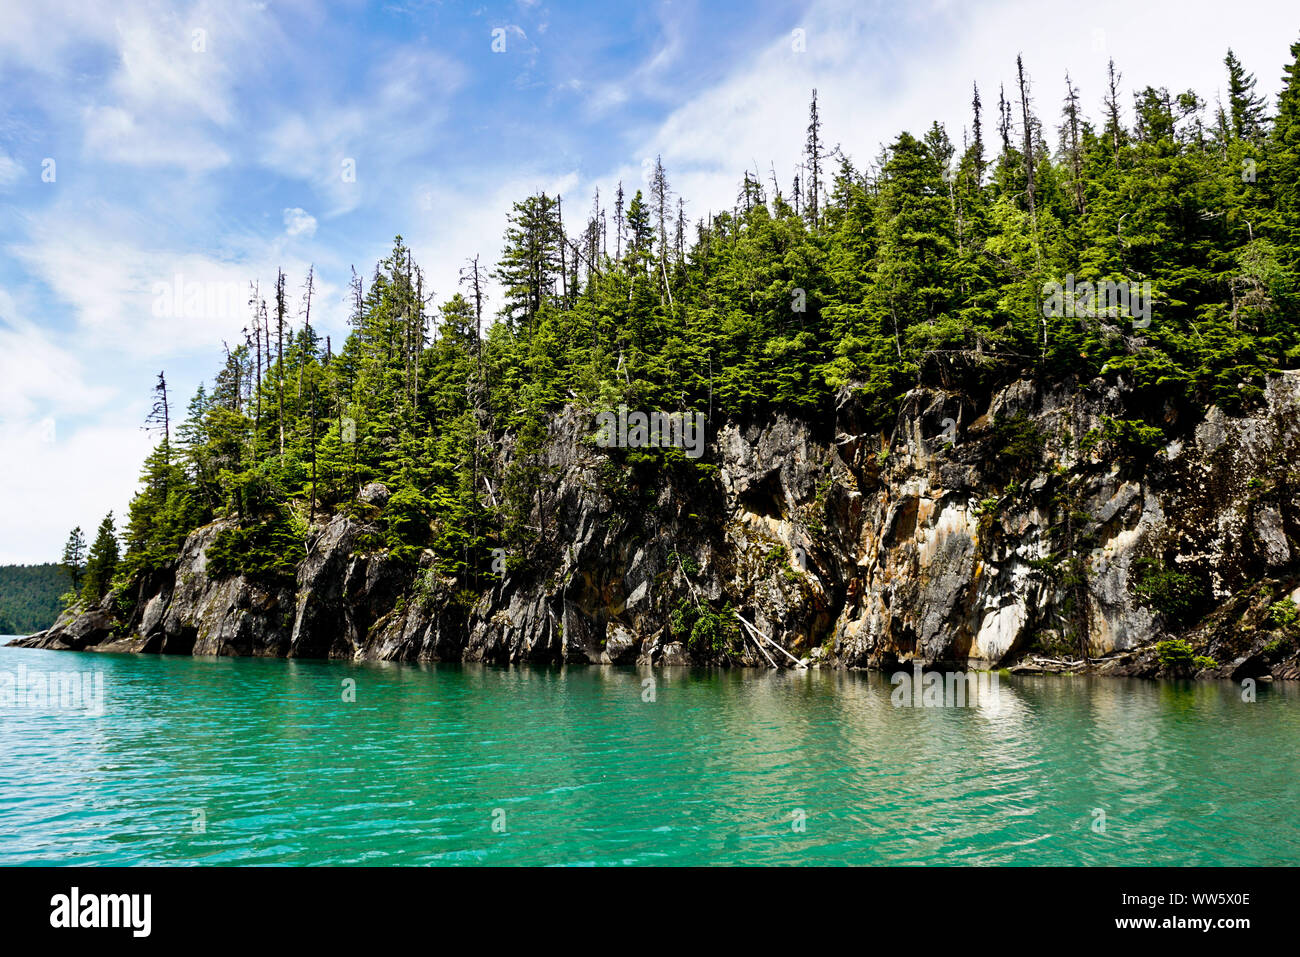 Voyage de canoë dans le parc provincial du lac Bowron de couleur turquoise, l'eau, côte rocheuse, conifères, Canada Banque D'Images